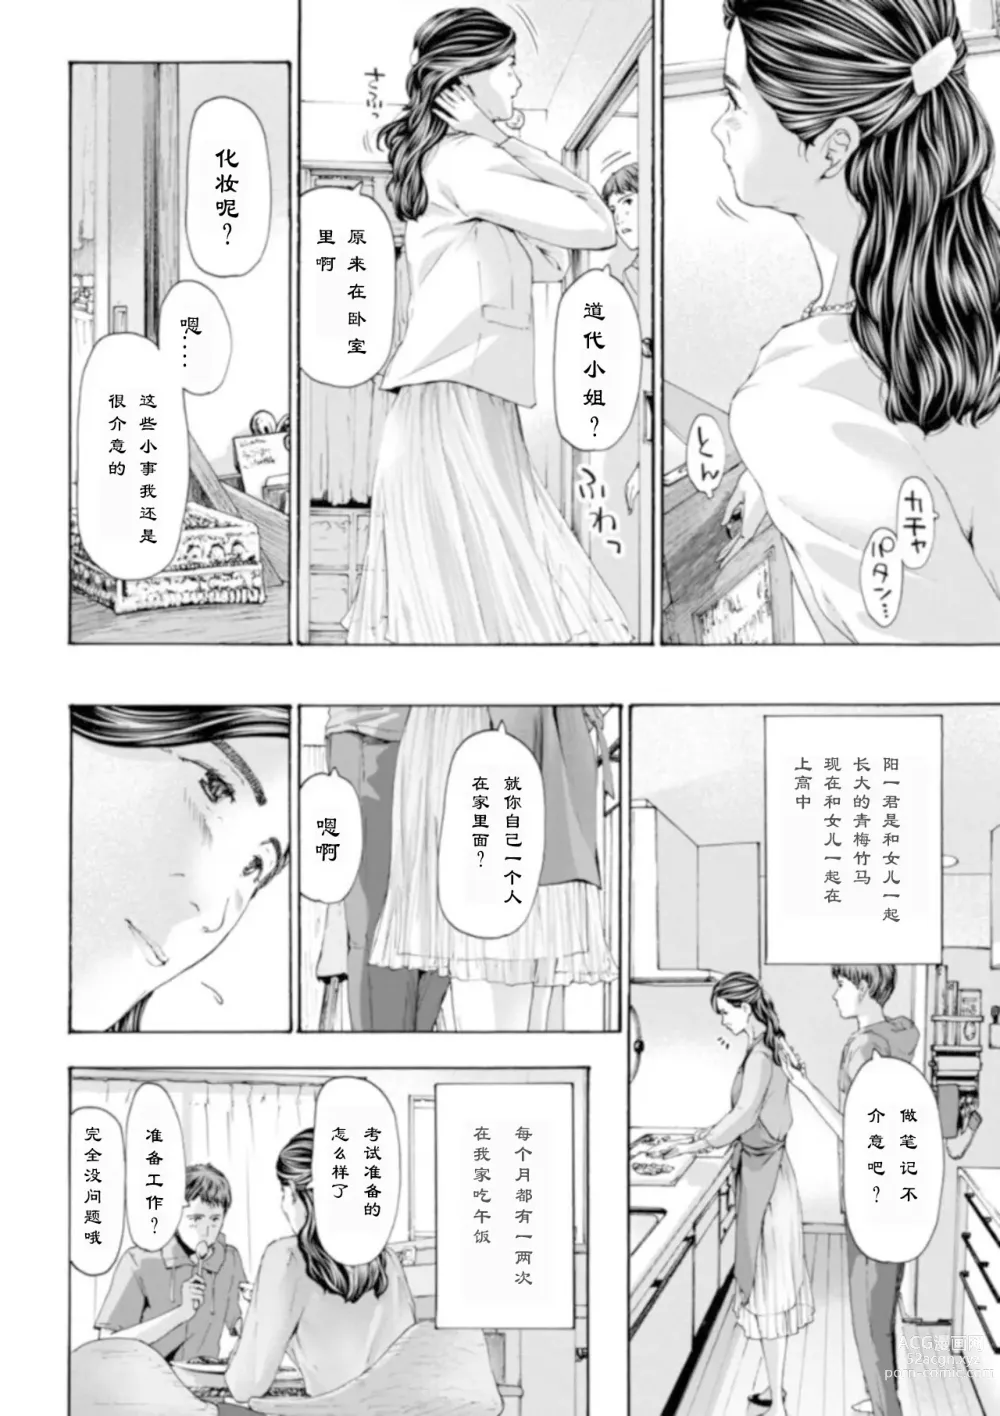 Page 2 of manga 慢慢来、慢慢来